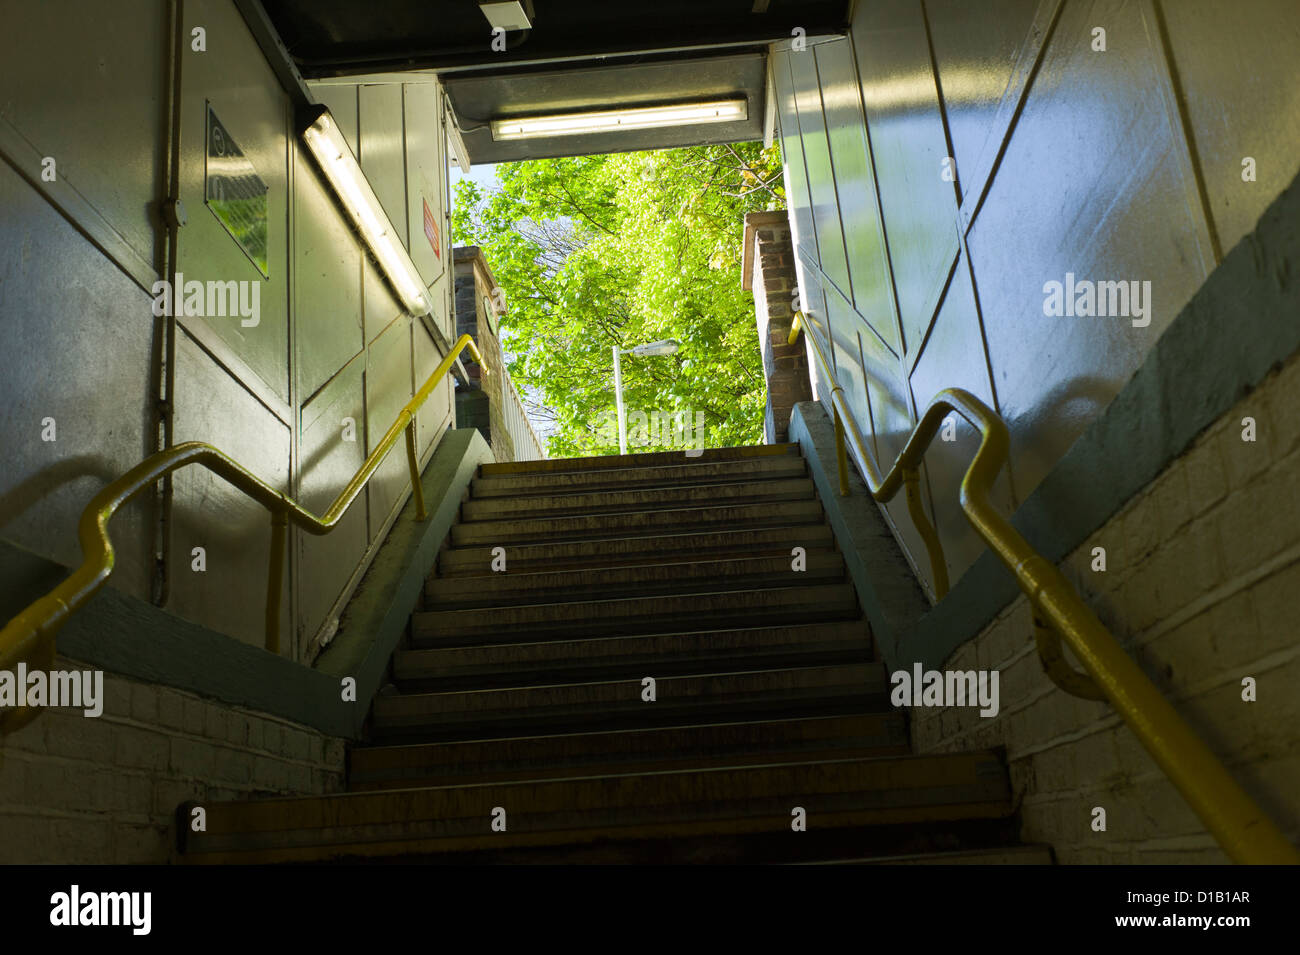 U-Bahn-Schritte auf der Suche nach oben, grüner Baum draußen, gelbes Geländer Stockfoto